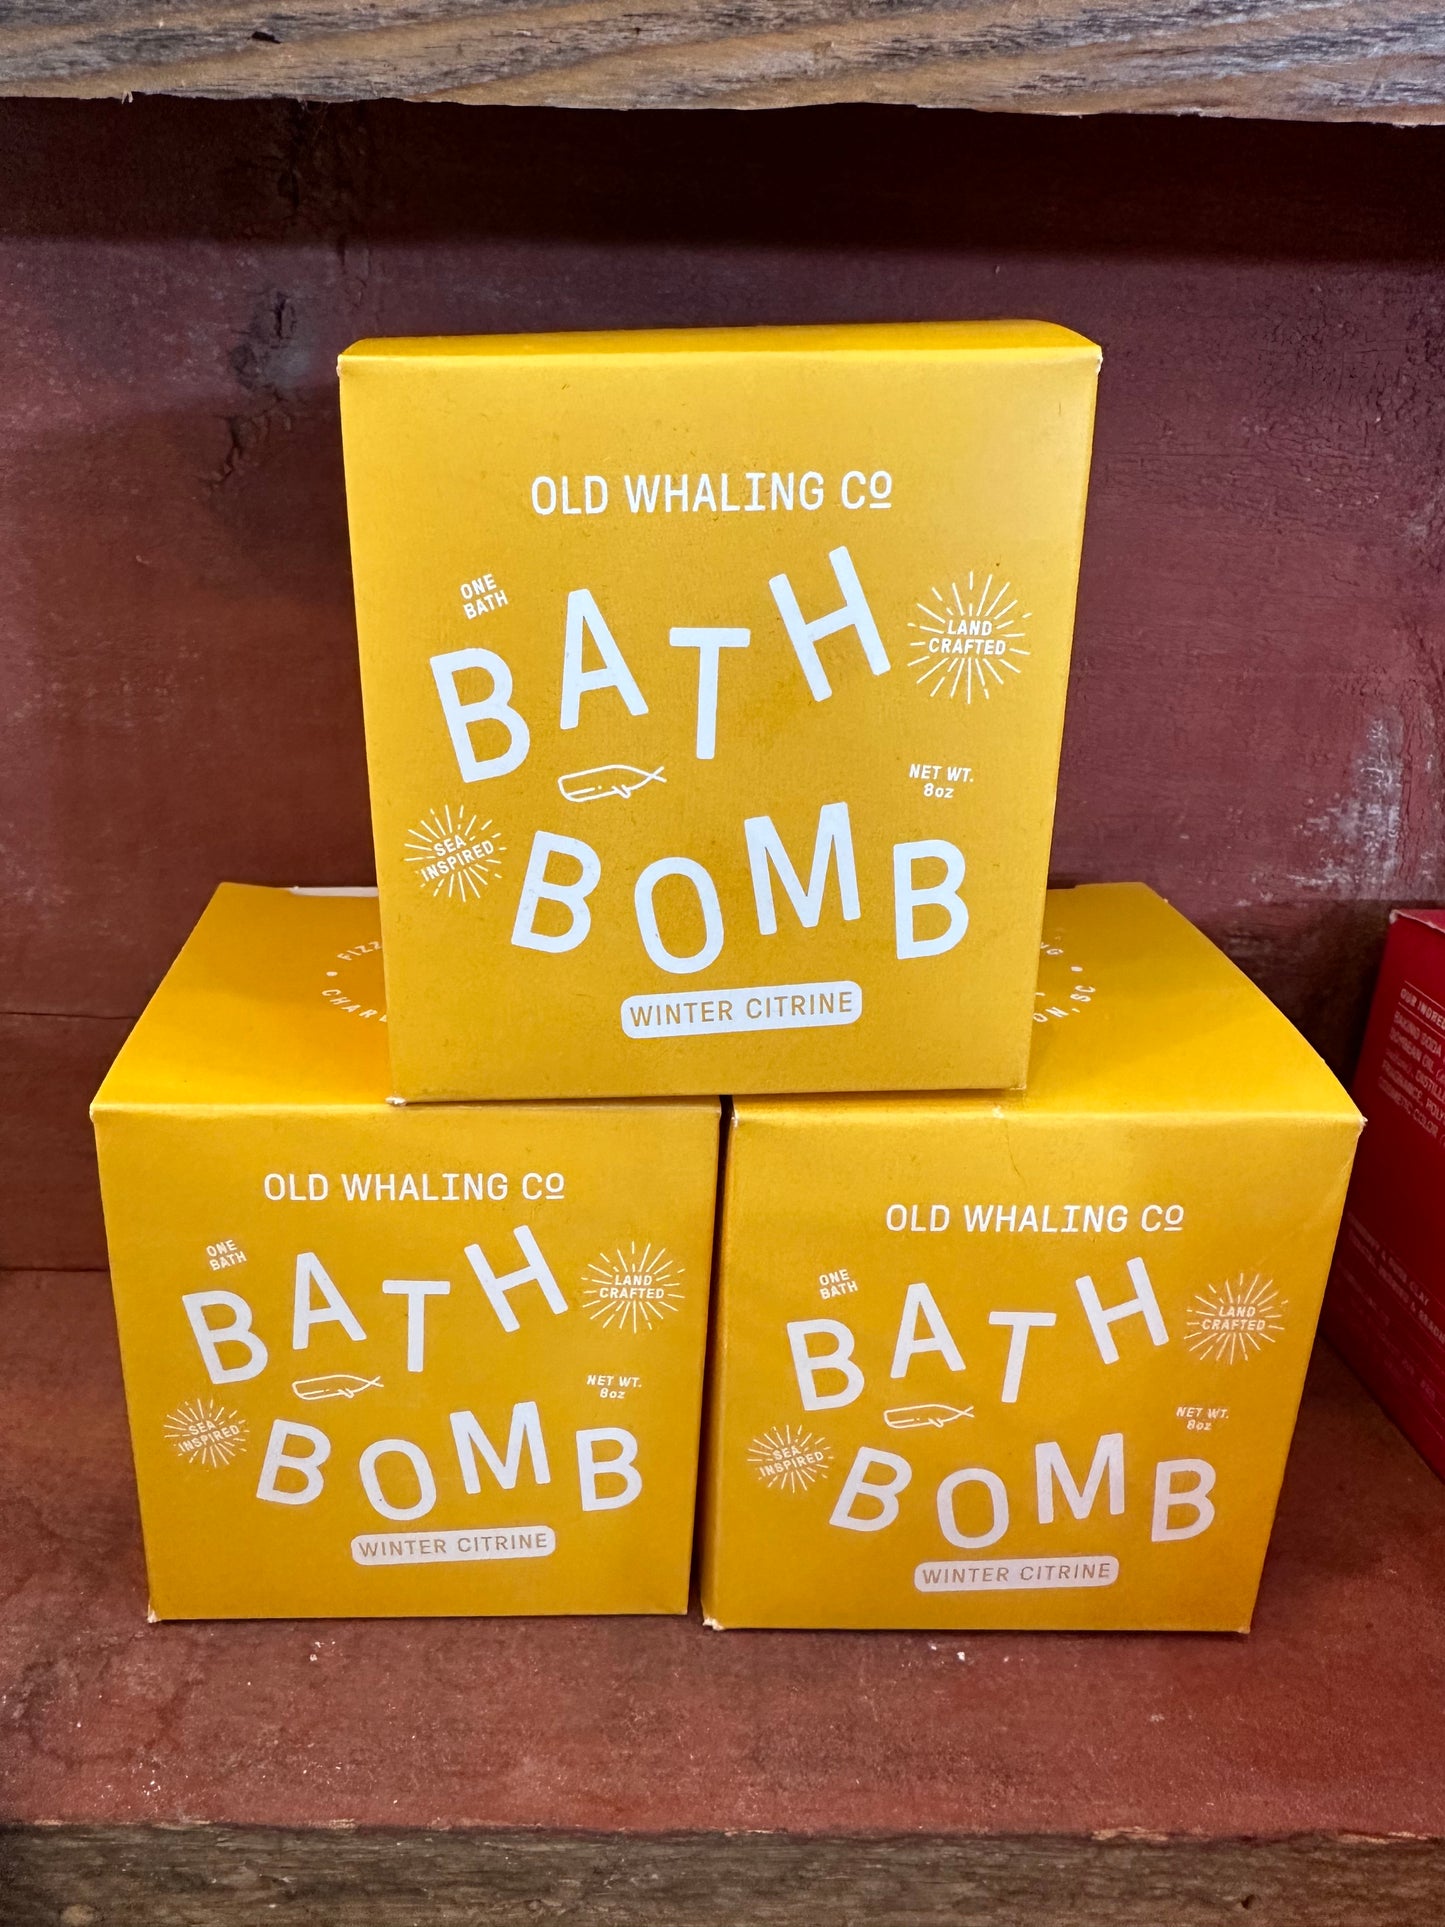 Natural Bath Bomb Kit